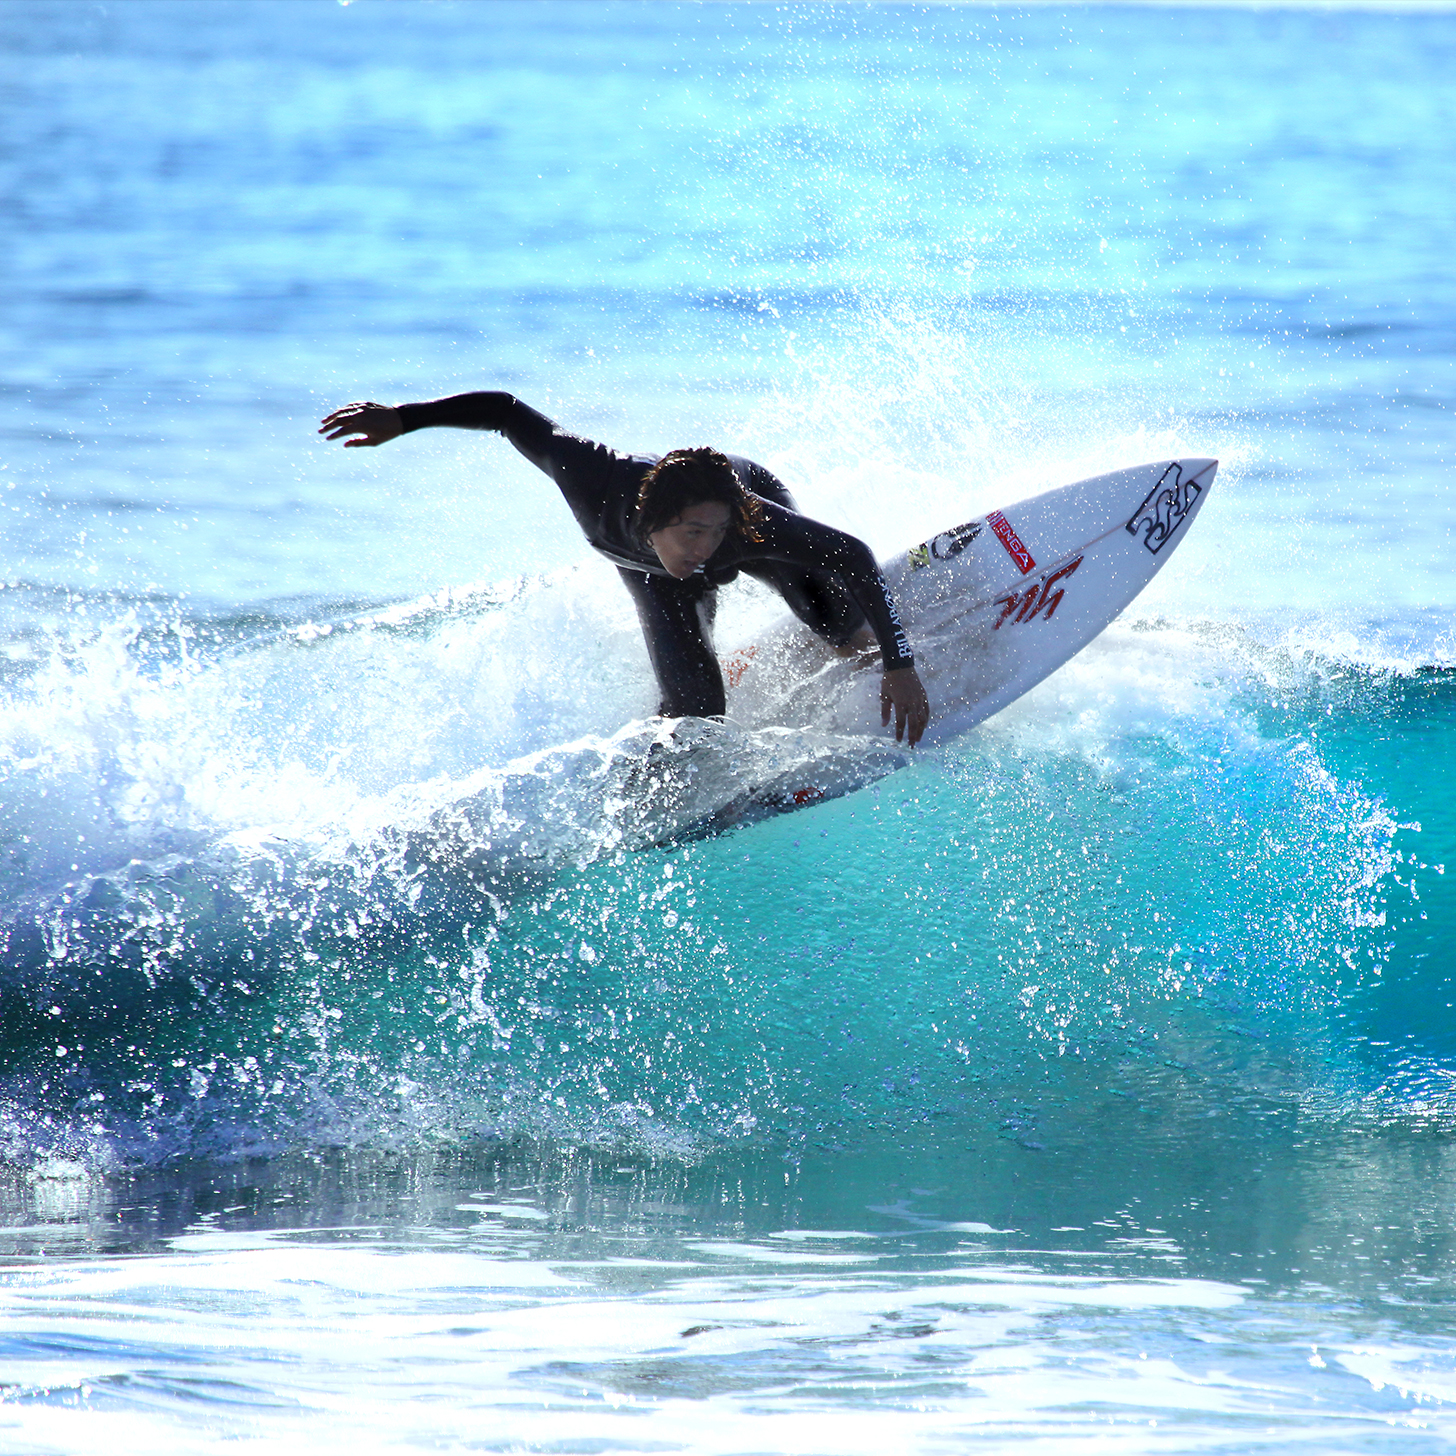 Logros Destacados en el Surfing